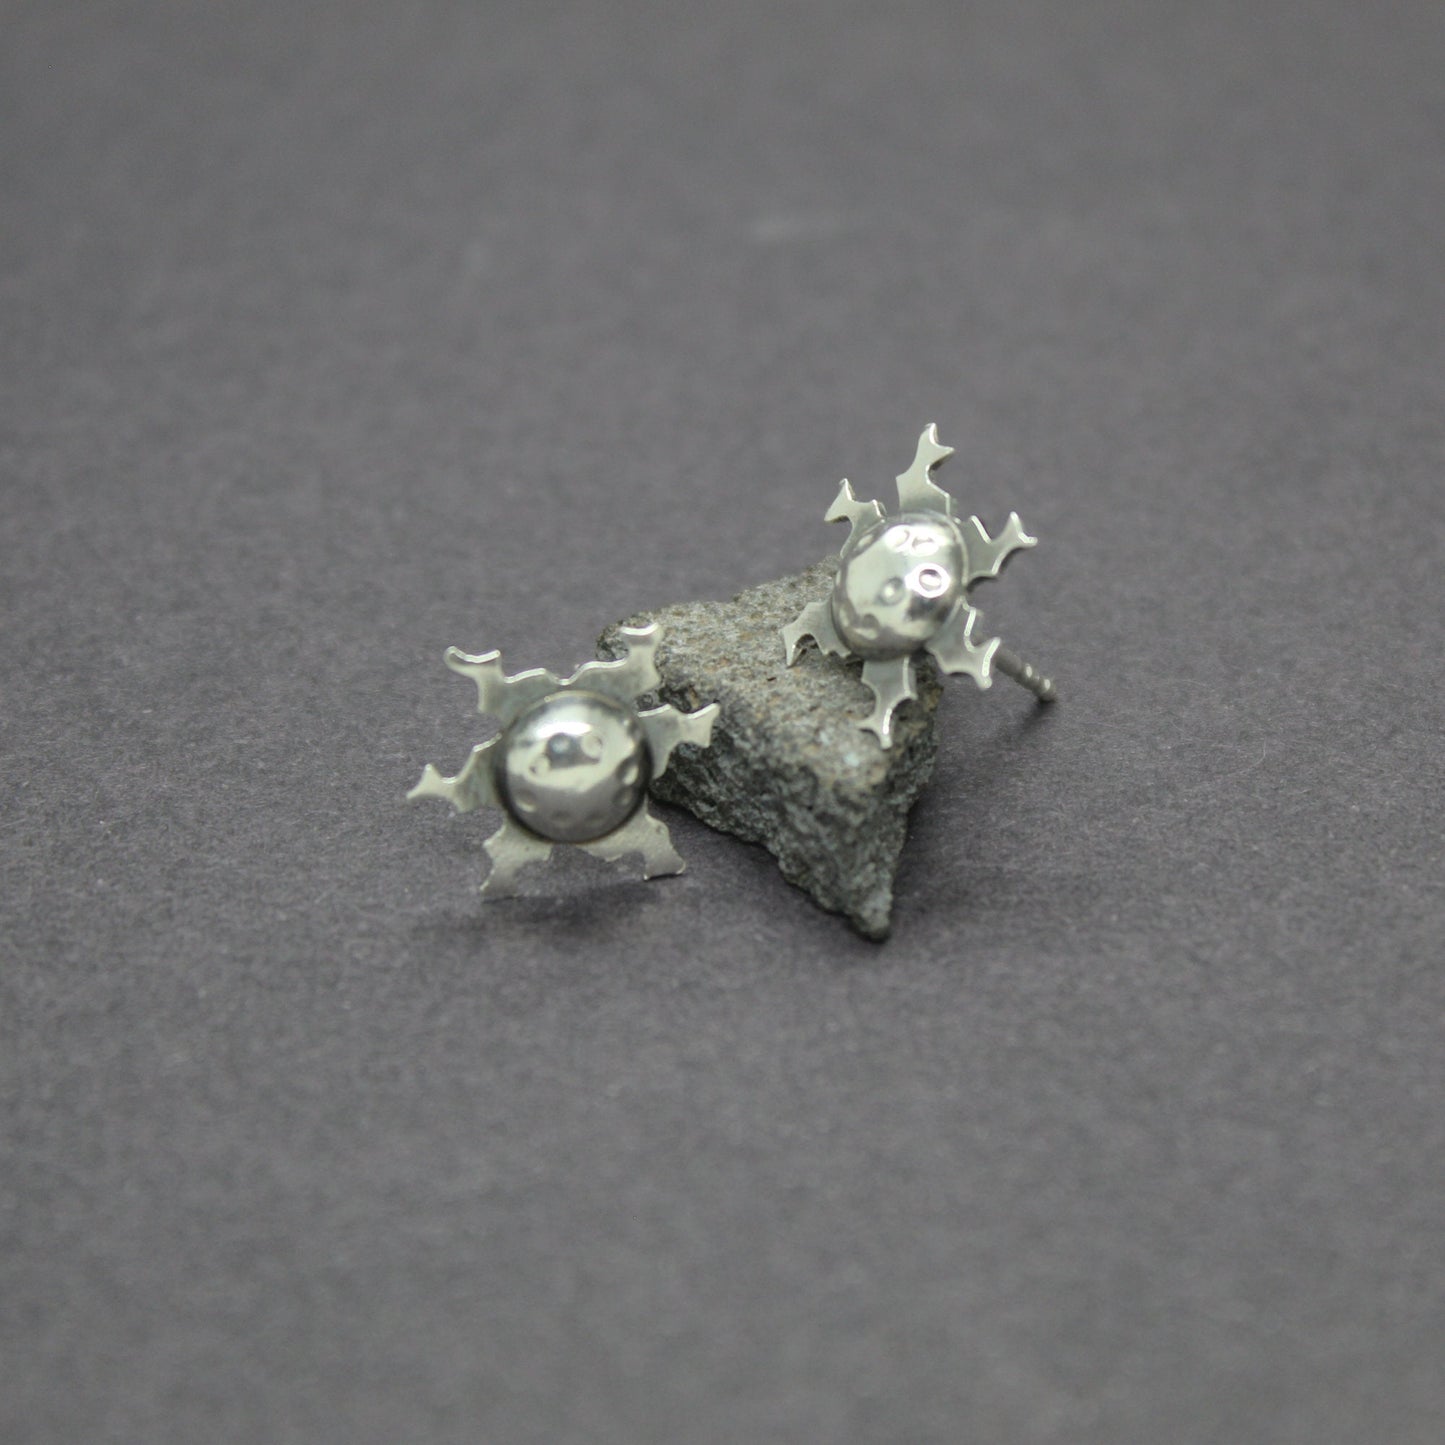 Eguzkilores earrings in 925 silver